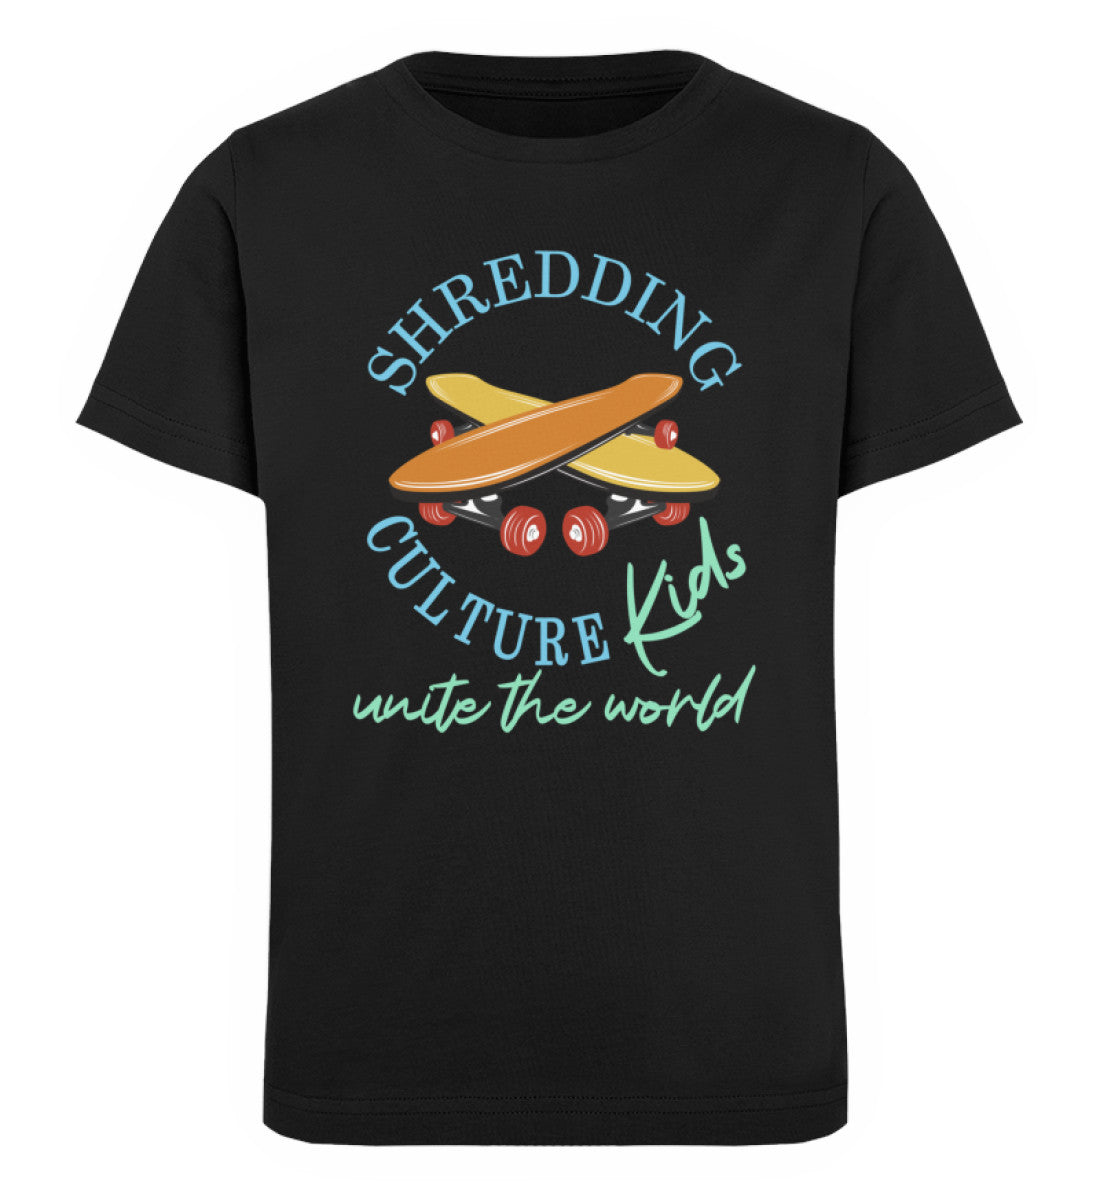 Schwarzes Kinder T-Shirt für Mädchen und Jungen bedruckt mit dem Design der Roger Rockawoo Kollektion shredding culture kids skateboard